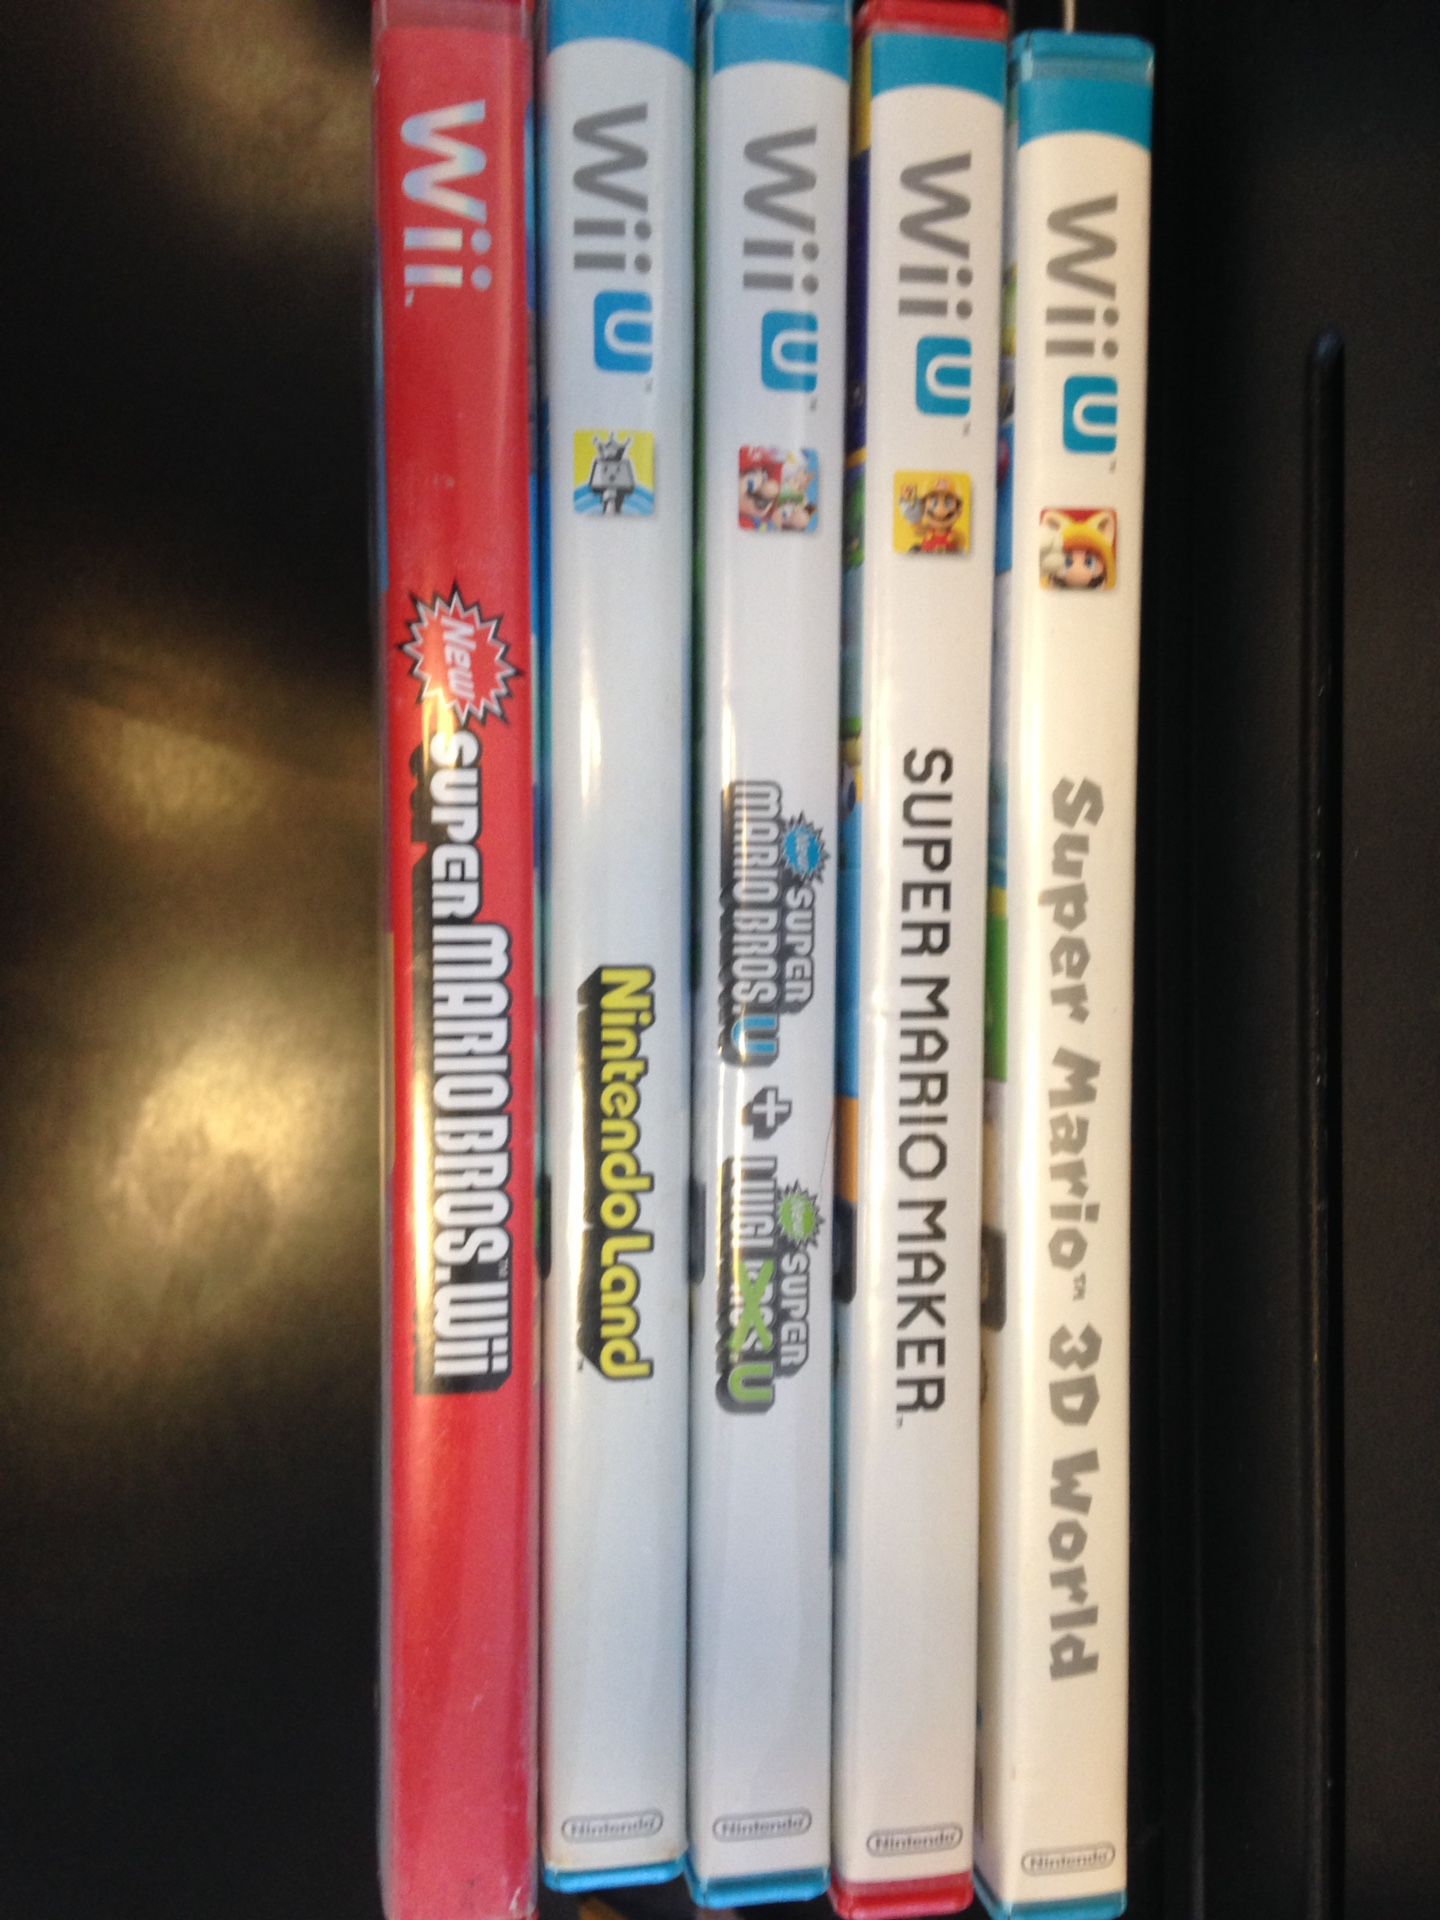 Wii & Wii U games. $80